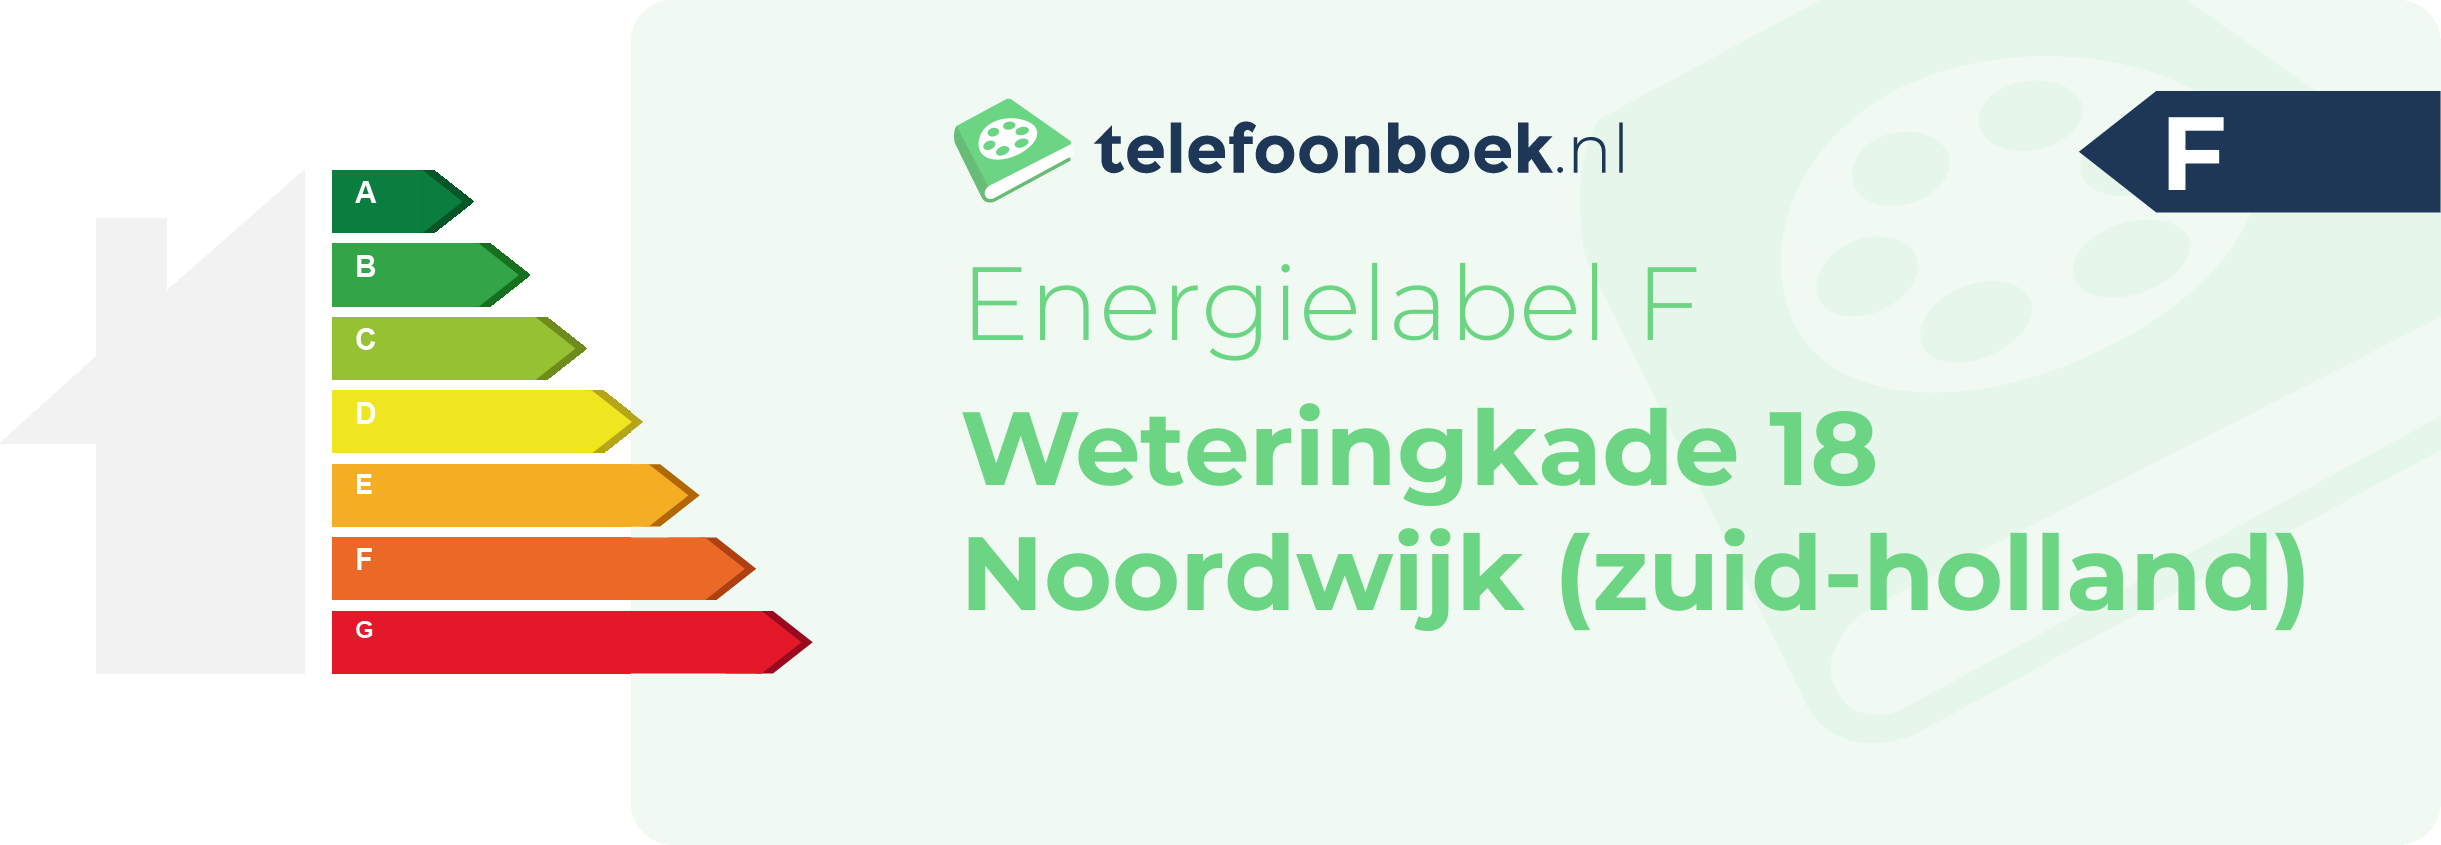 Energielabel Weteringkade 18 Noordwijk (Zuid-Holland)